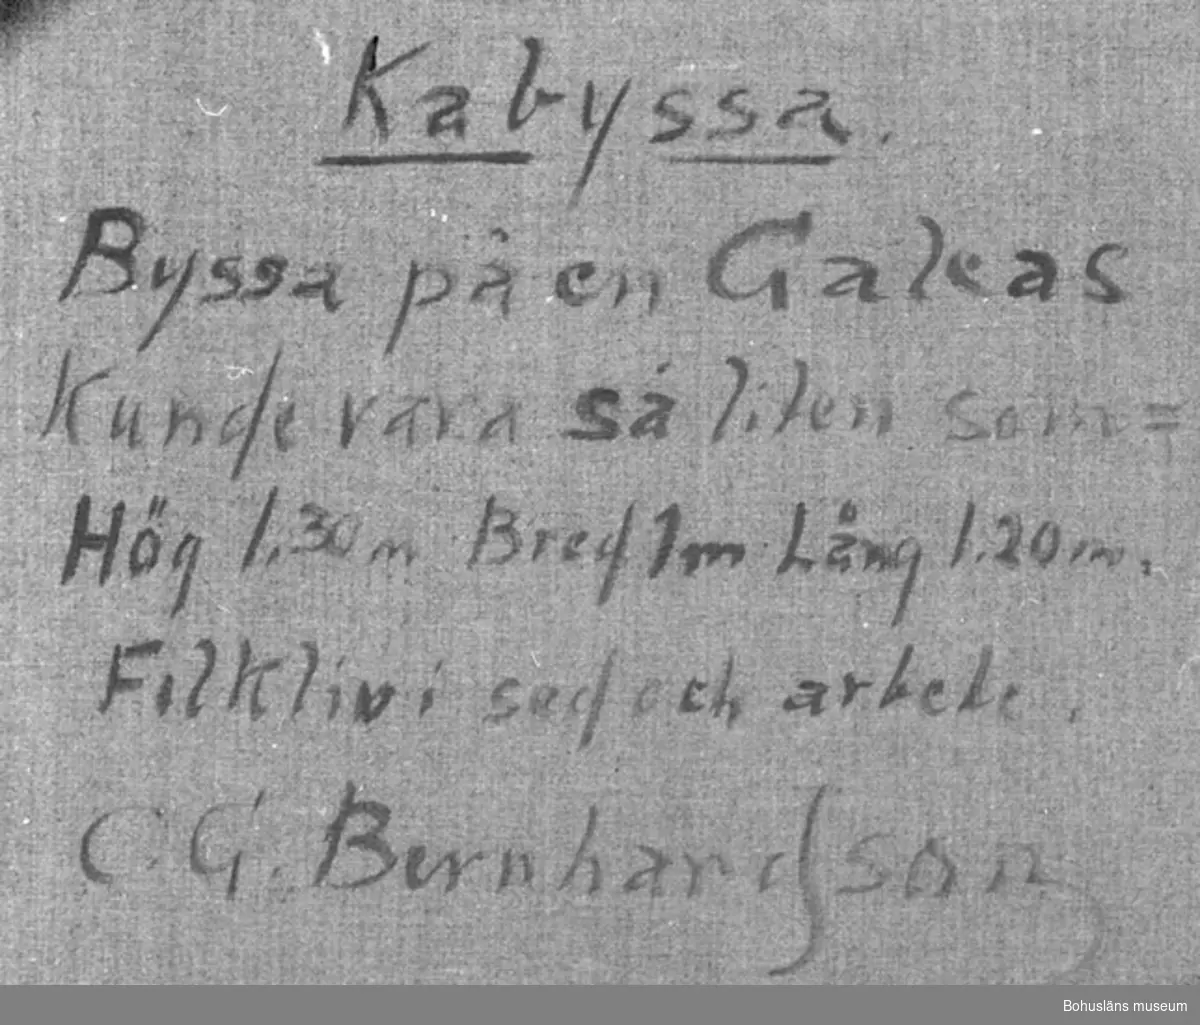 Baksidestext: 
"Kabyssa.
Byssa på en Galeas Kunde vara så liten som =  Hög 1,30 m Bred 1m Lång 1,20 m.
Folkliv i sed och arbete.
C.G. Bernhardson."